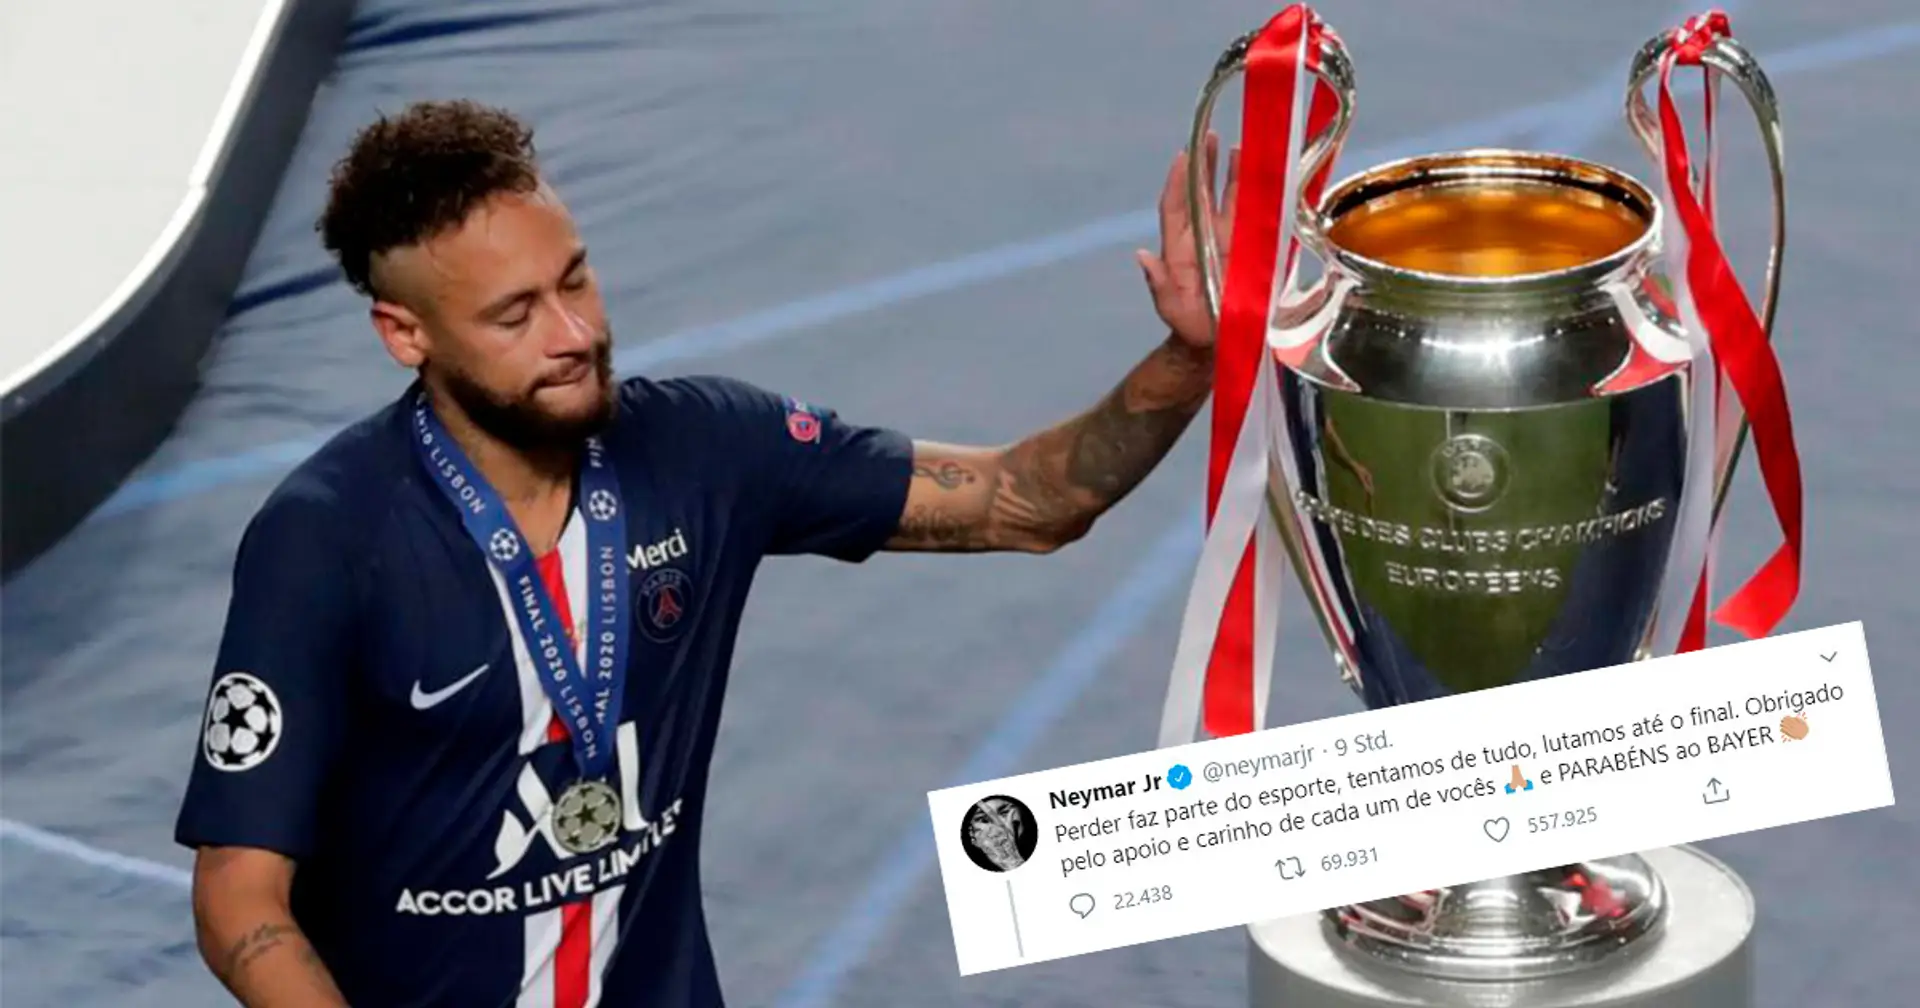 🤣 Nach dem CL-Finale gratulierte Neymar 'Bayer' und bekam 'Dank' aus Leverkusen